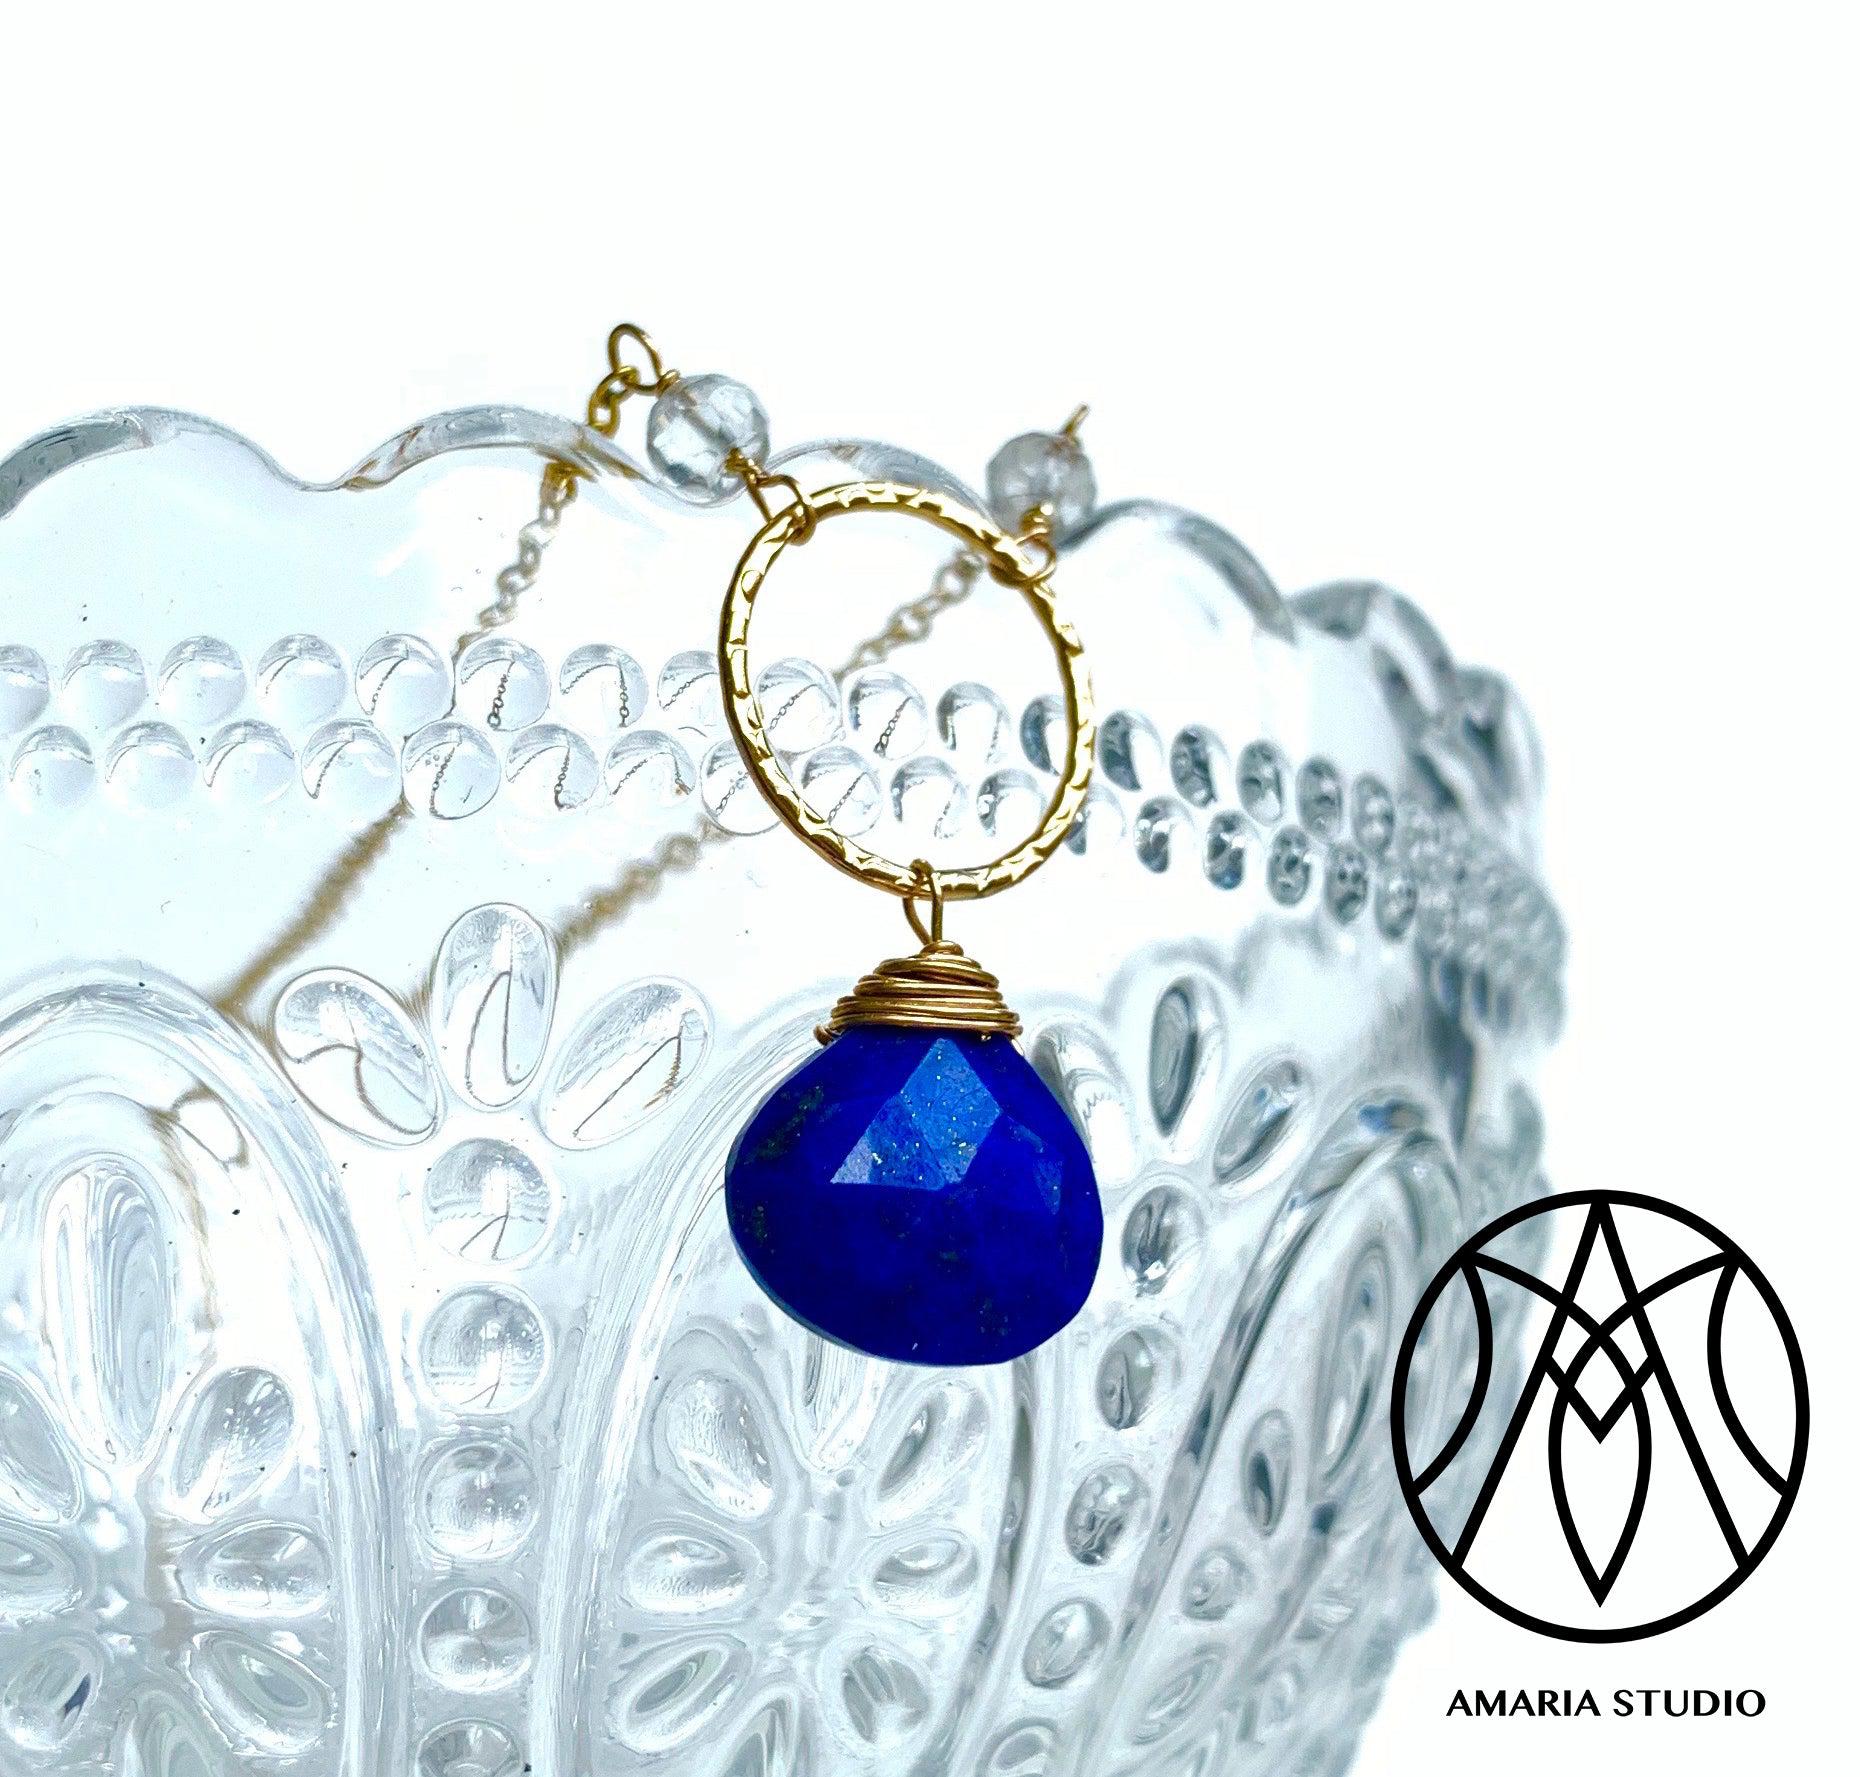 Lapis Lazuli and white topaz necklace - Amaria Studio